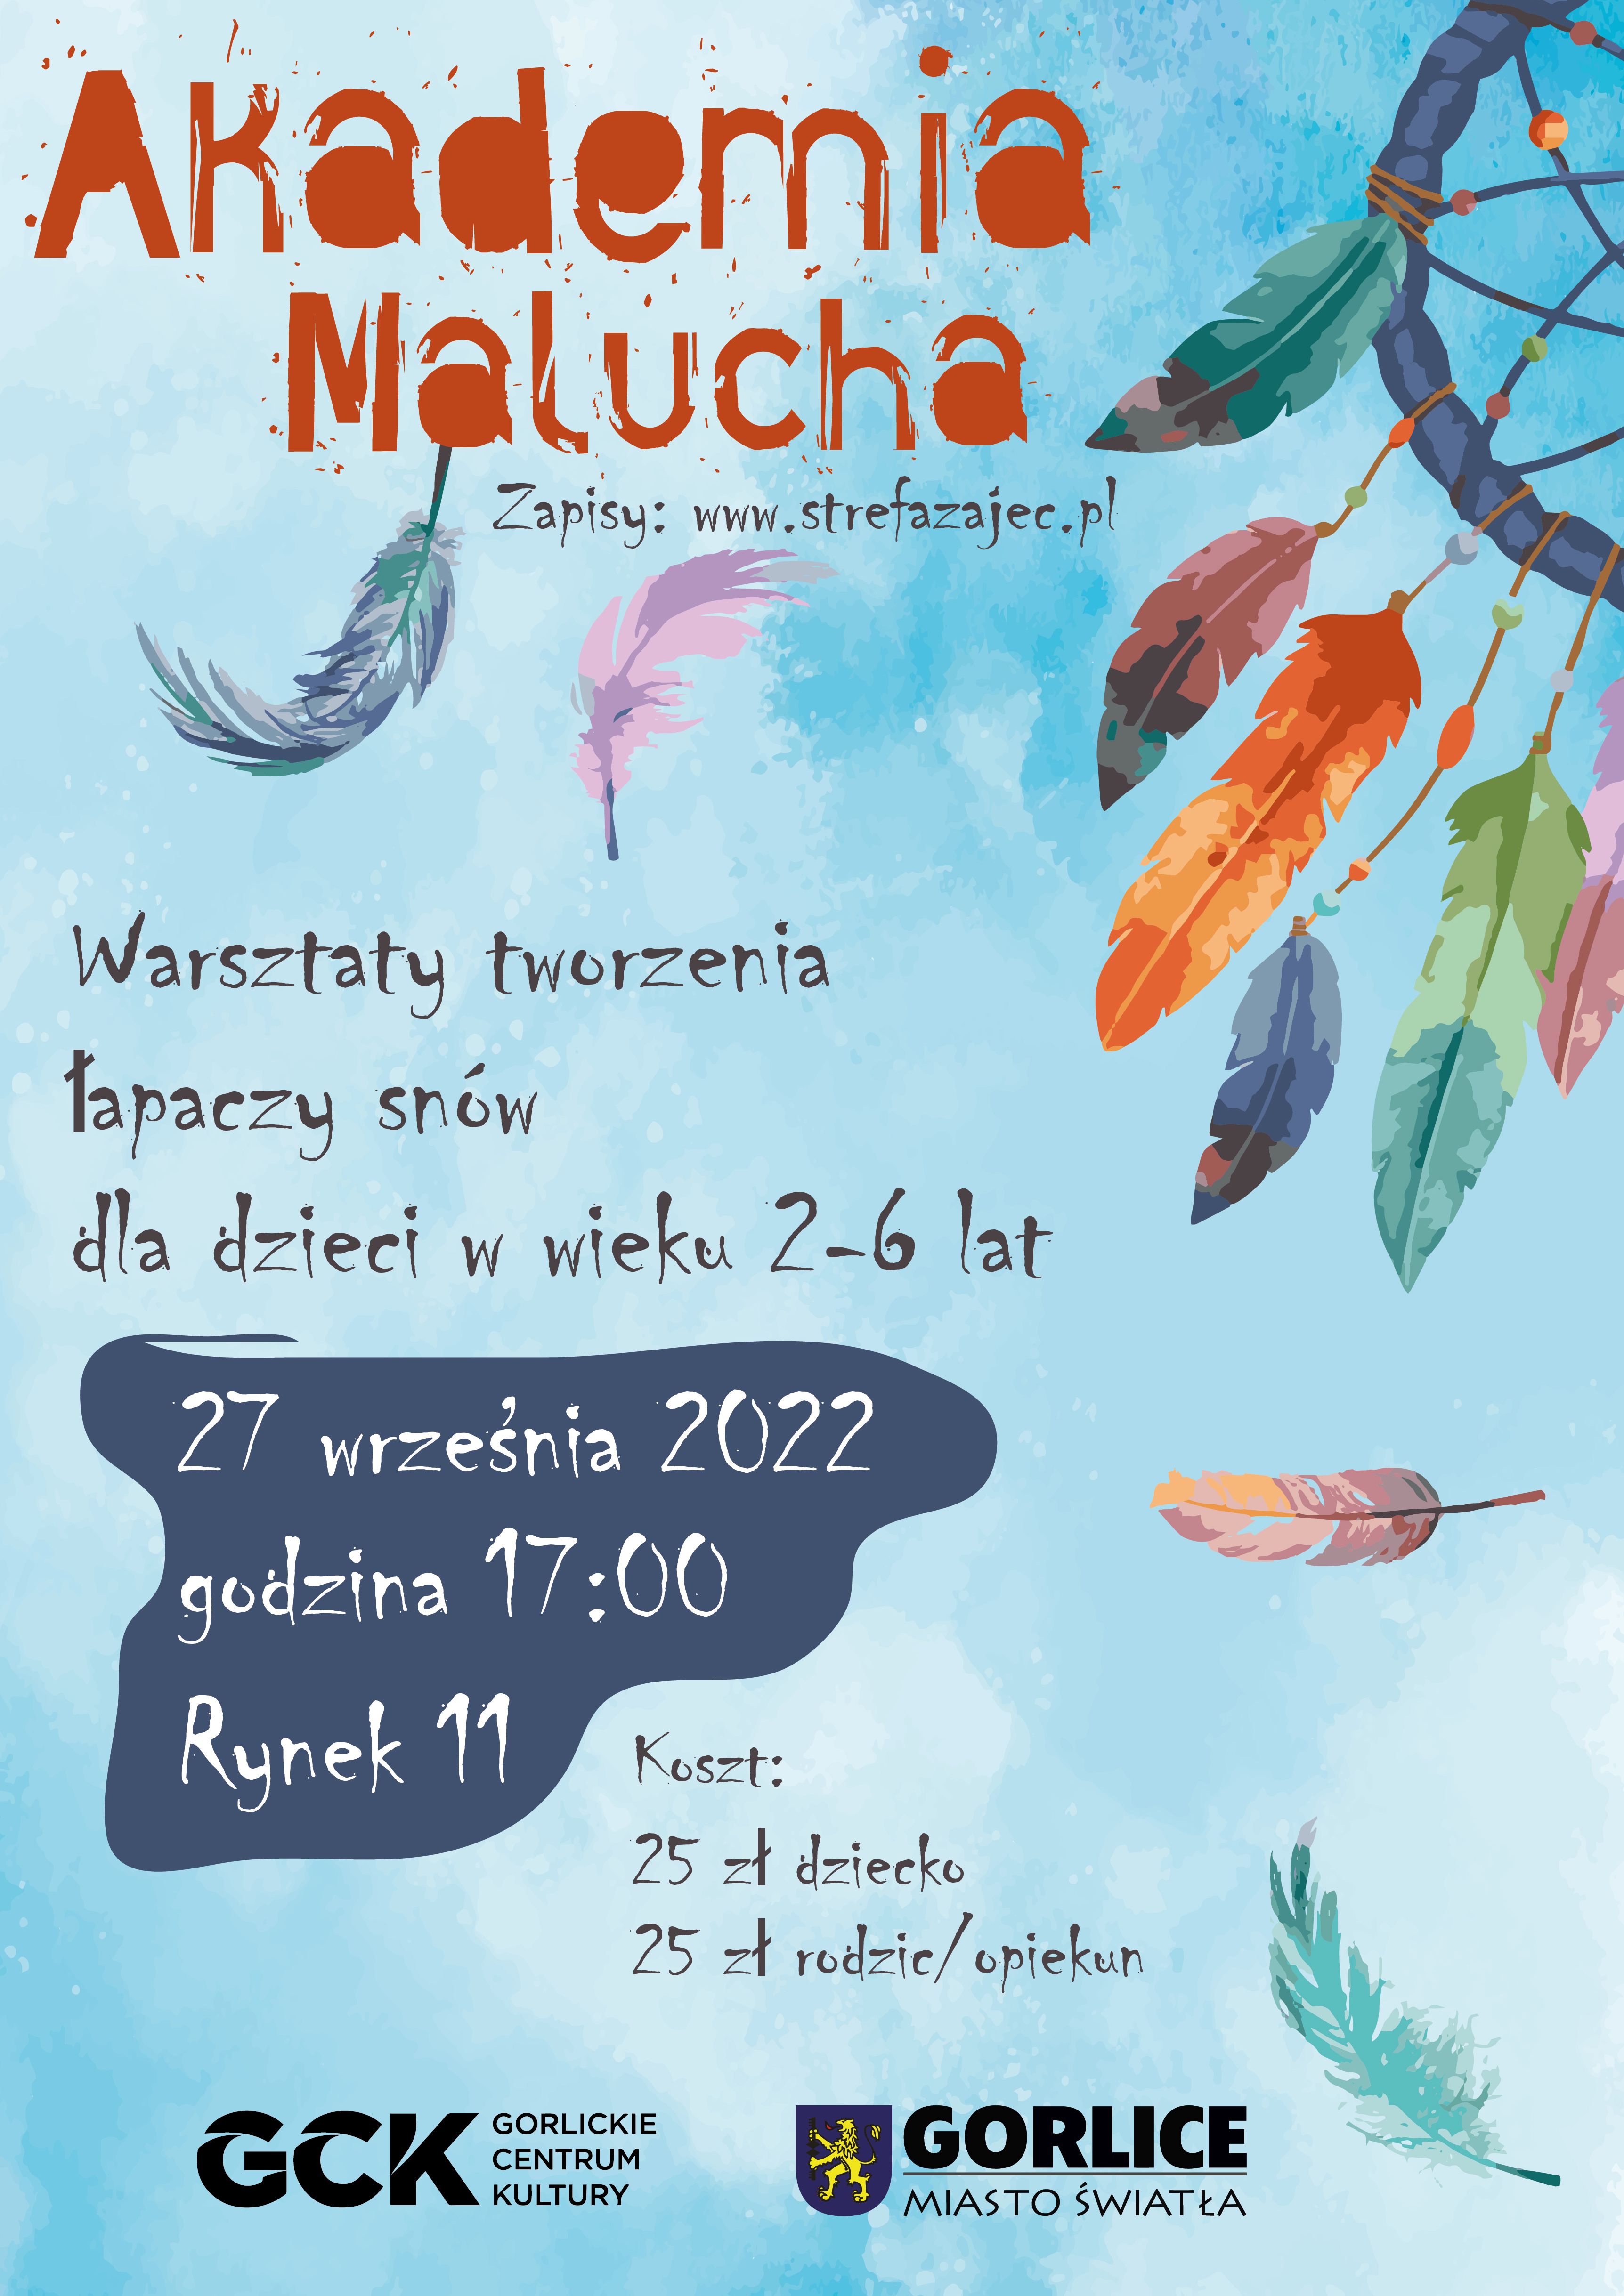 Plakat zapraszający na zajęcia Akademia Malucha.